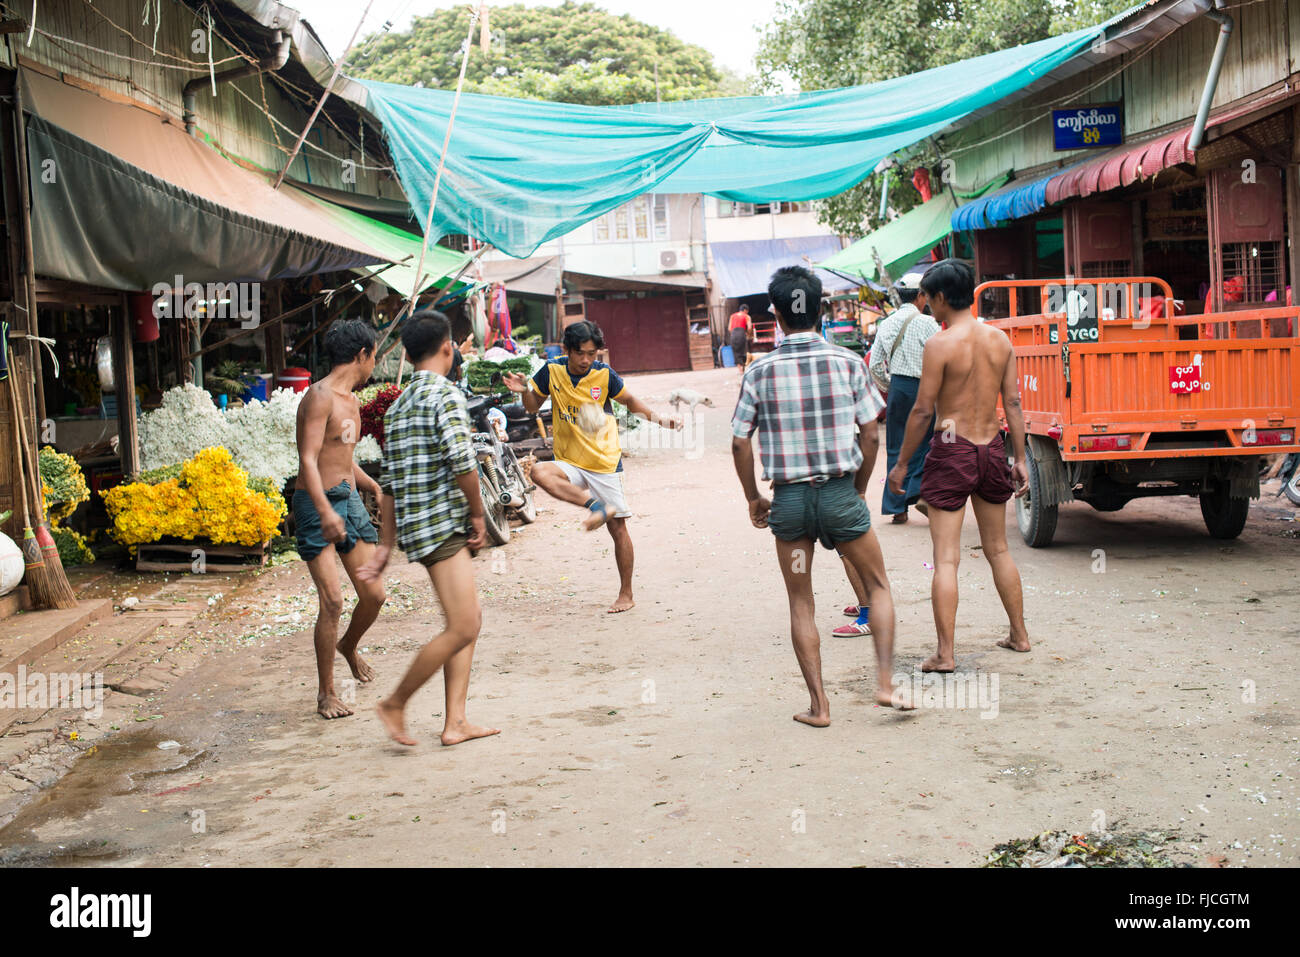 MANDALAY, Myanmar – Eine Gruppe birmanischer Männer spielt auf einer belebten Straße in Mandalay, Myanmar, ein lebhaftes Spiel von Chinlone, auch bekannt als Caneball. Dieser traditionelle Sport, der für Myanmars kulturelle Identität von zentraler Bedeutung ist, erfordert Geschicklichkeit und Teamarbeit – Eigenschaften, die den Gemeinschaftsgeist fördern. Stockfoto